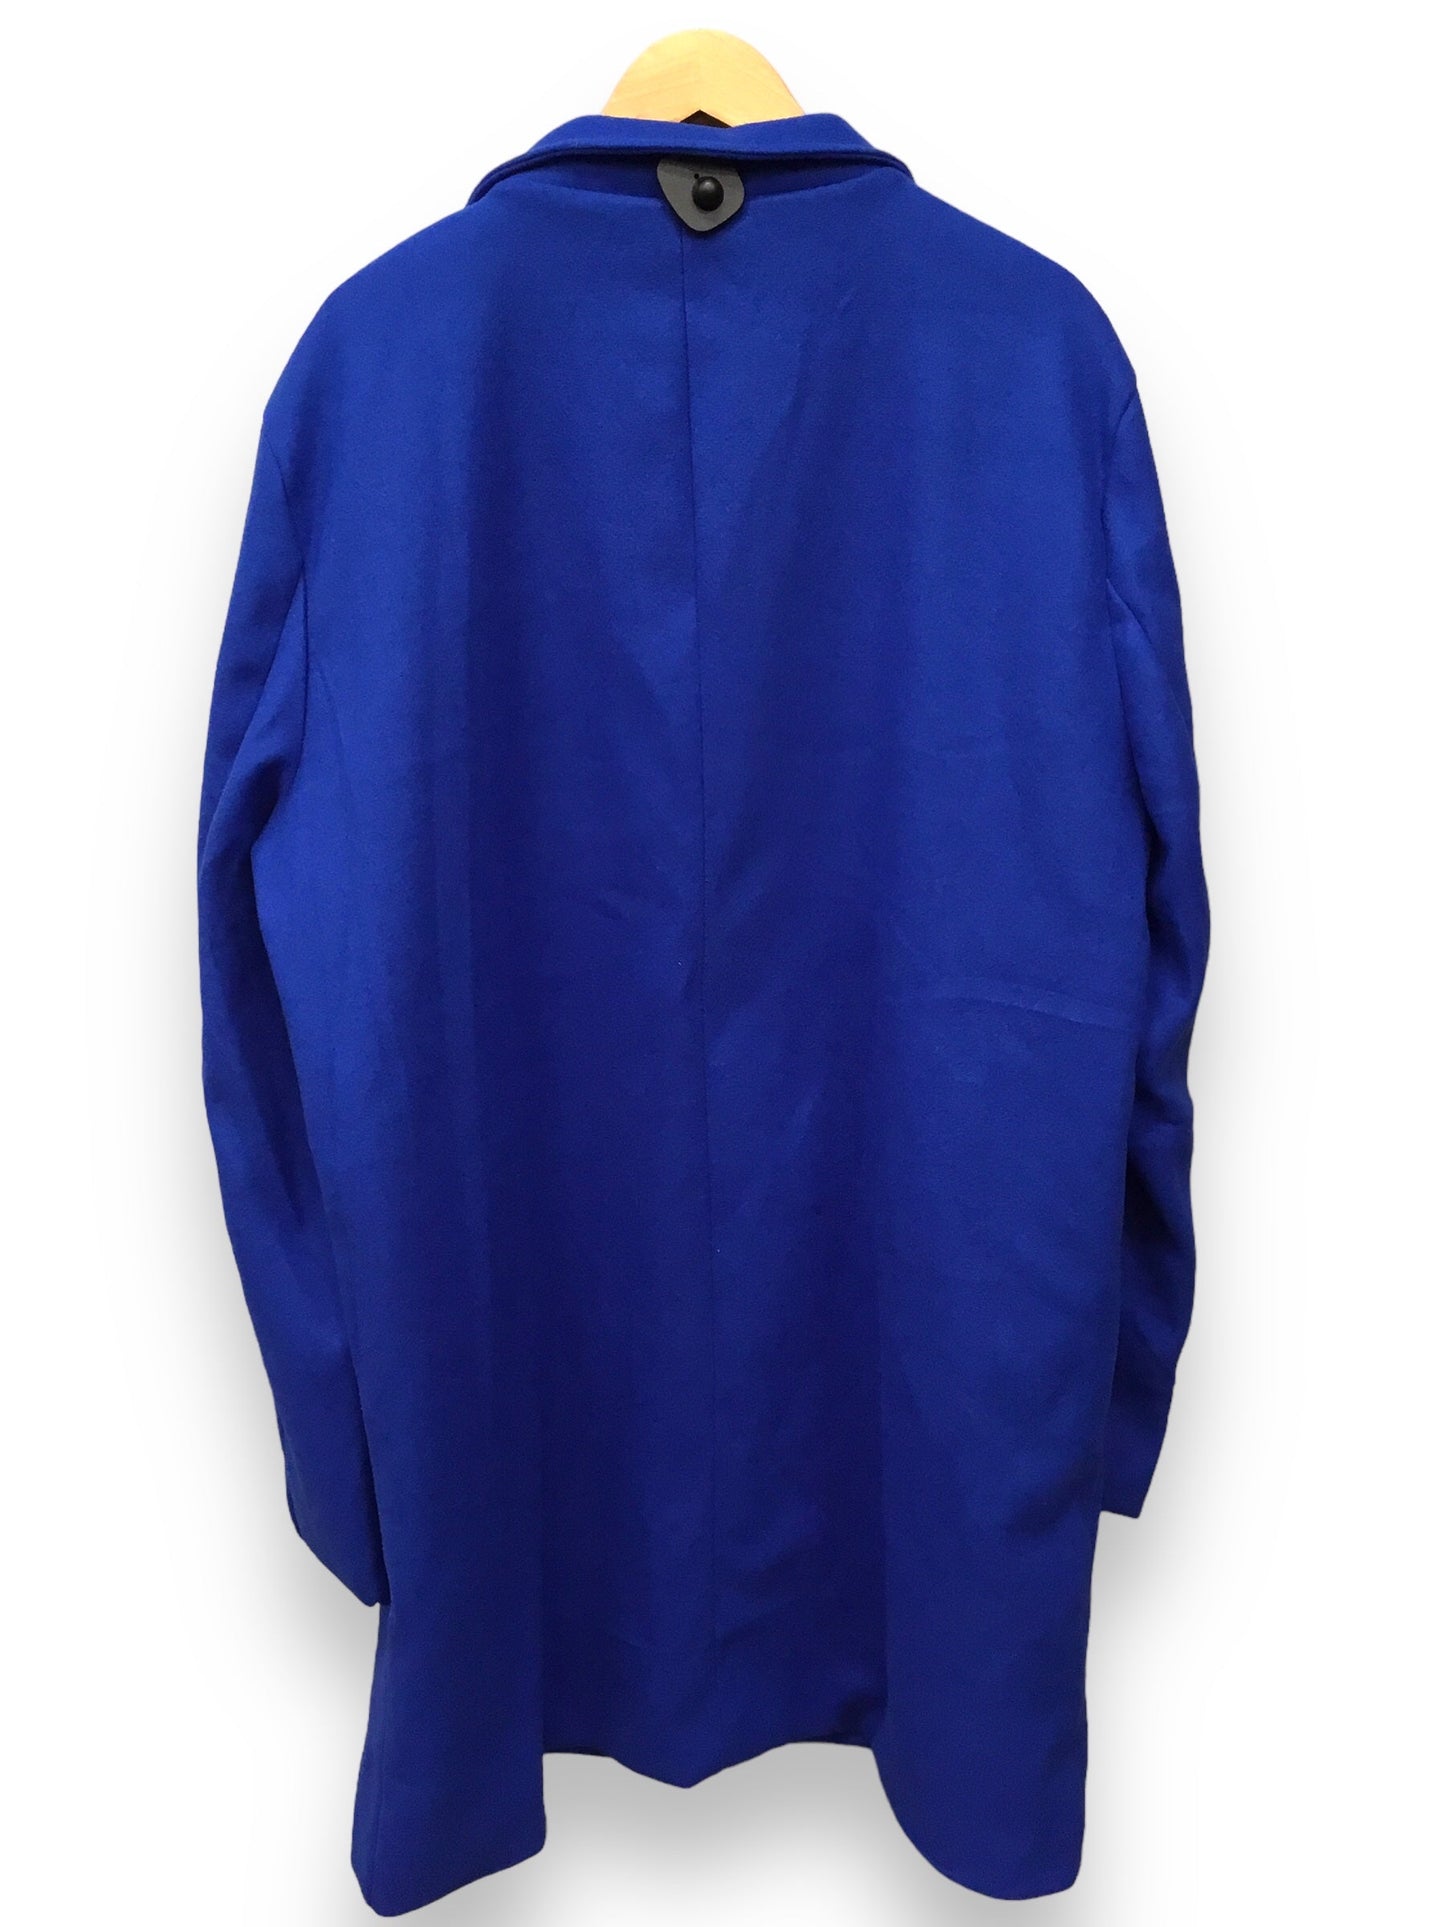 Blue Coat Peacoat Clothes Mentor, Size Xxl